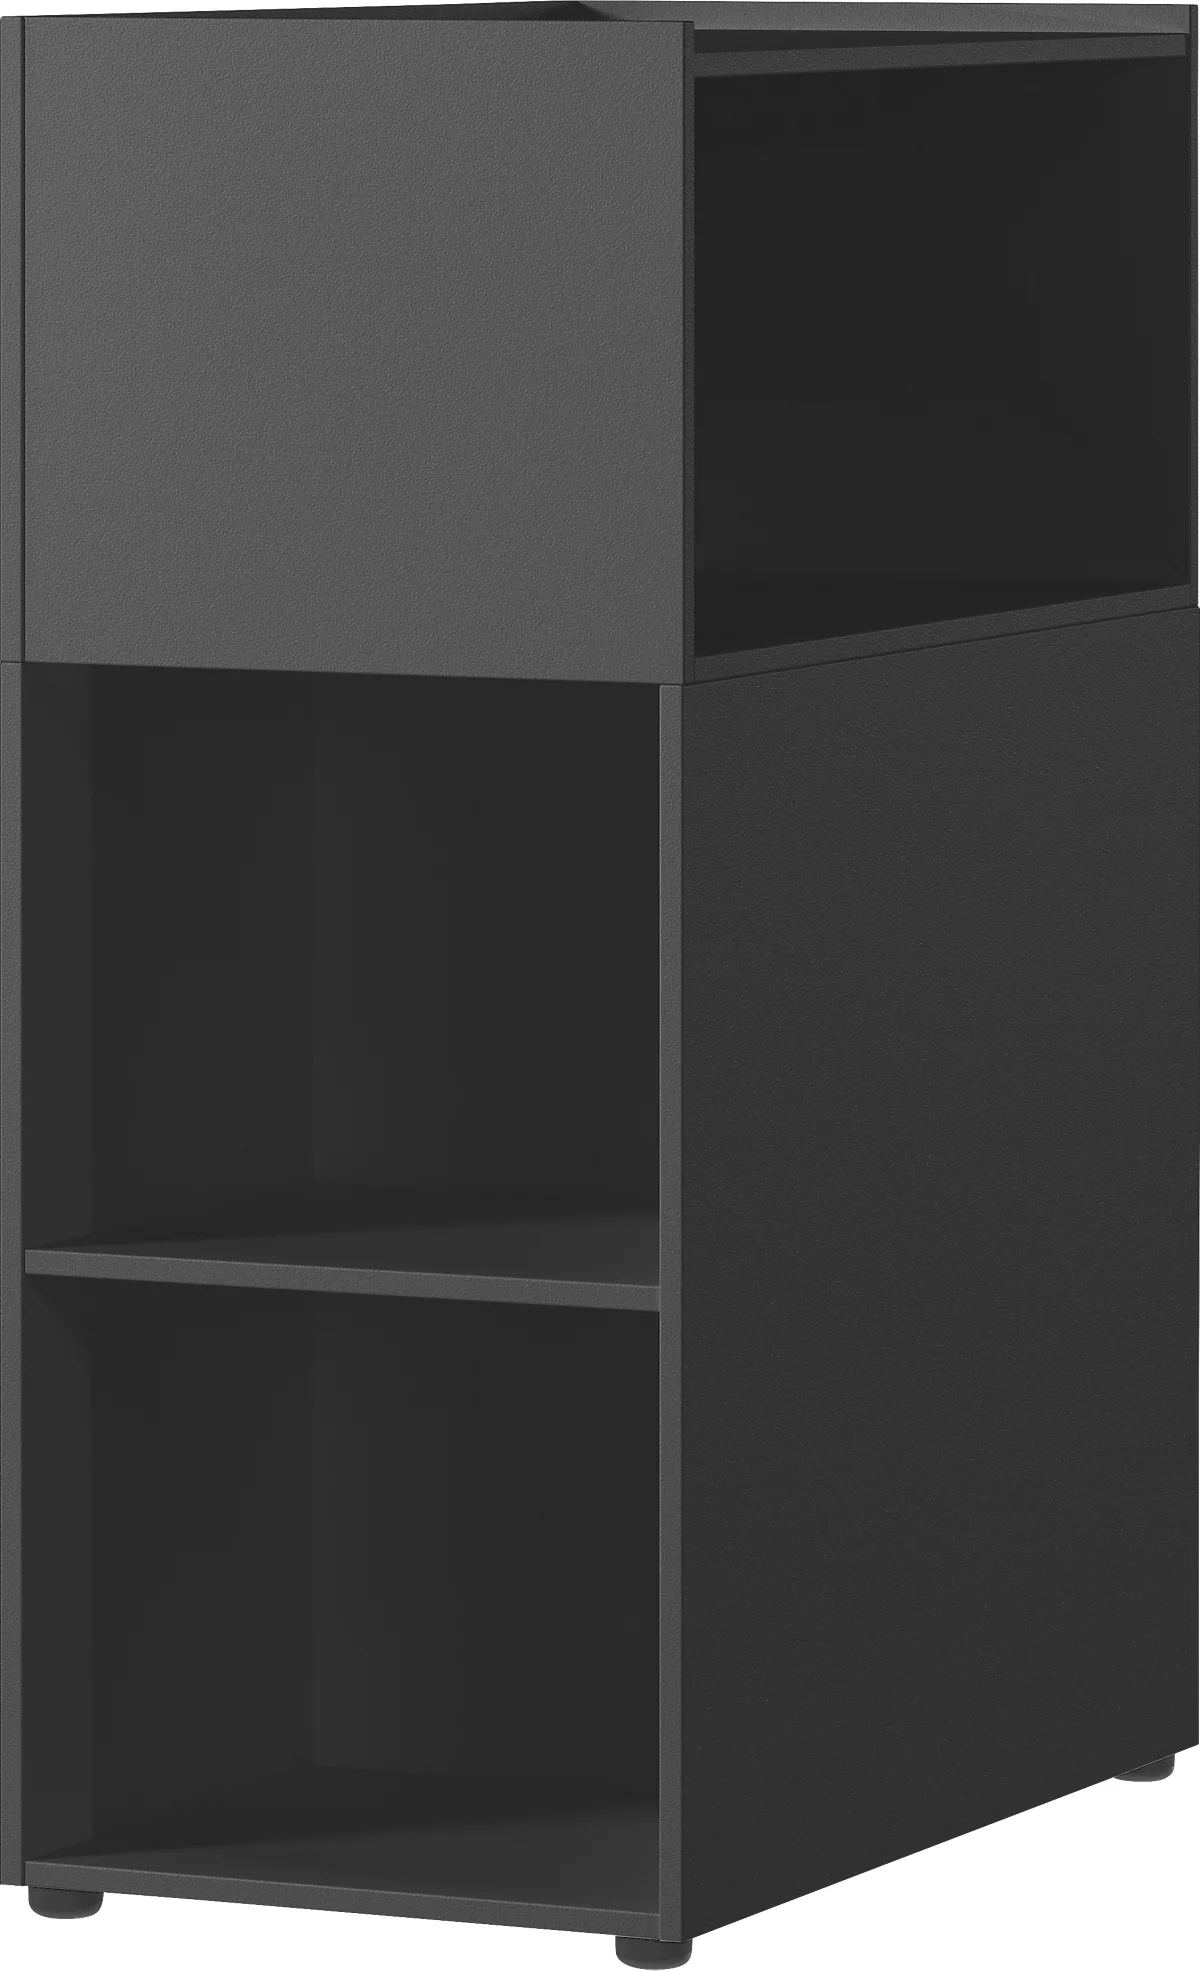 Raumteiler-Regal Porto, 1 großes Fach, 4 kleine Fächer, B 800 x T 460 x H 1200 mm, graphit